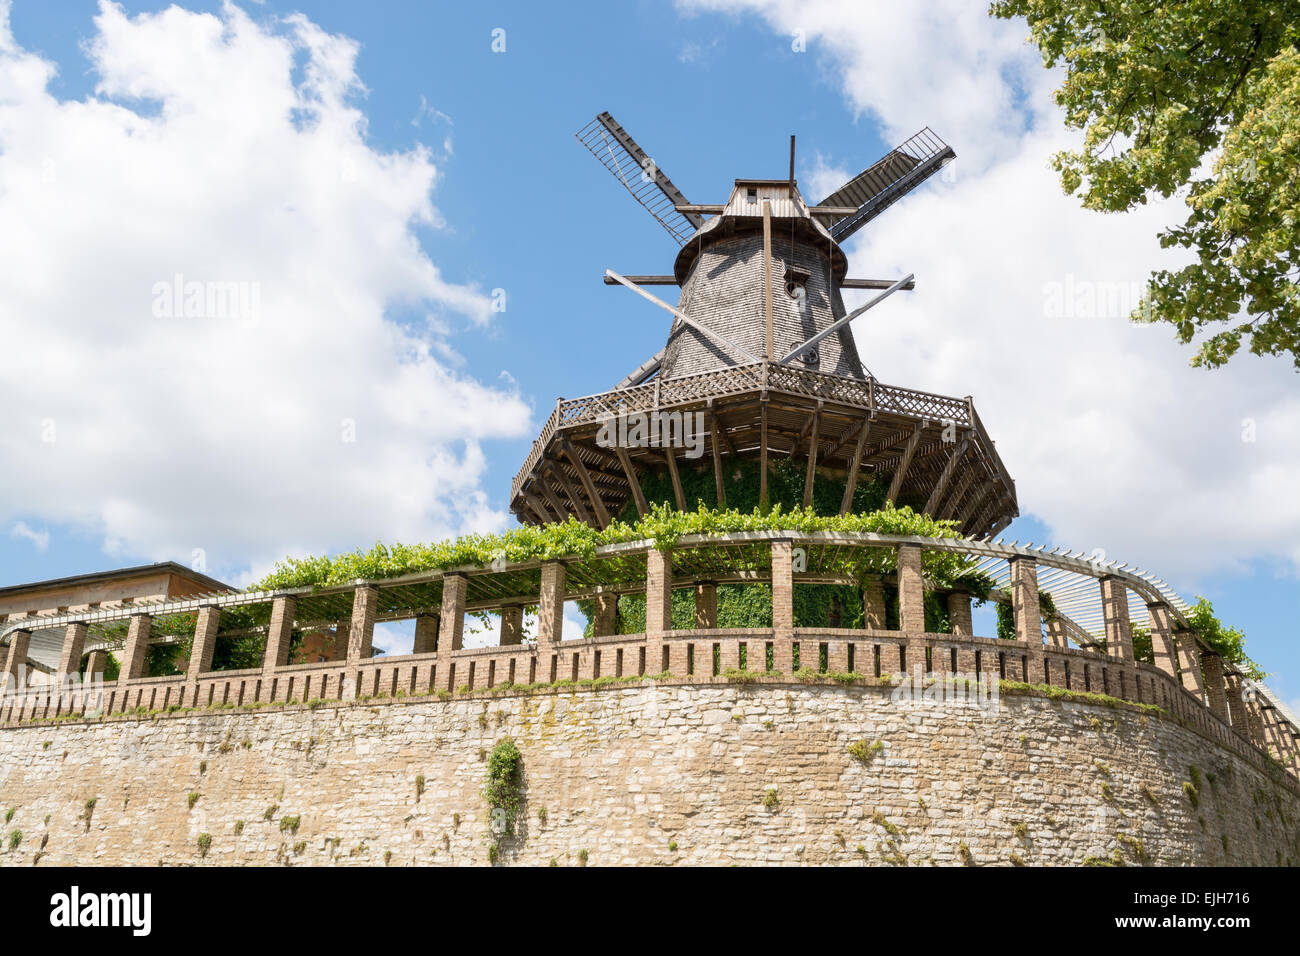 Ancien moulin dans le parc Sanssouci, Potsdam, Germany, Europe Banque D'Images